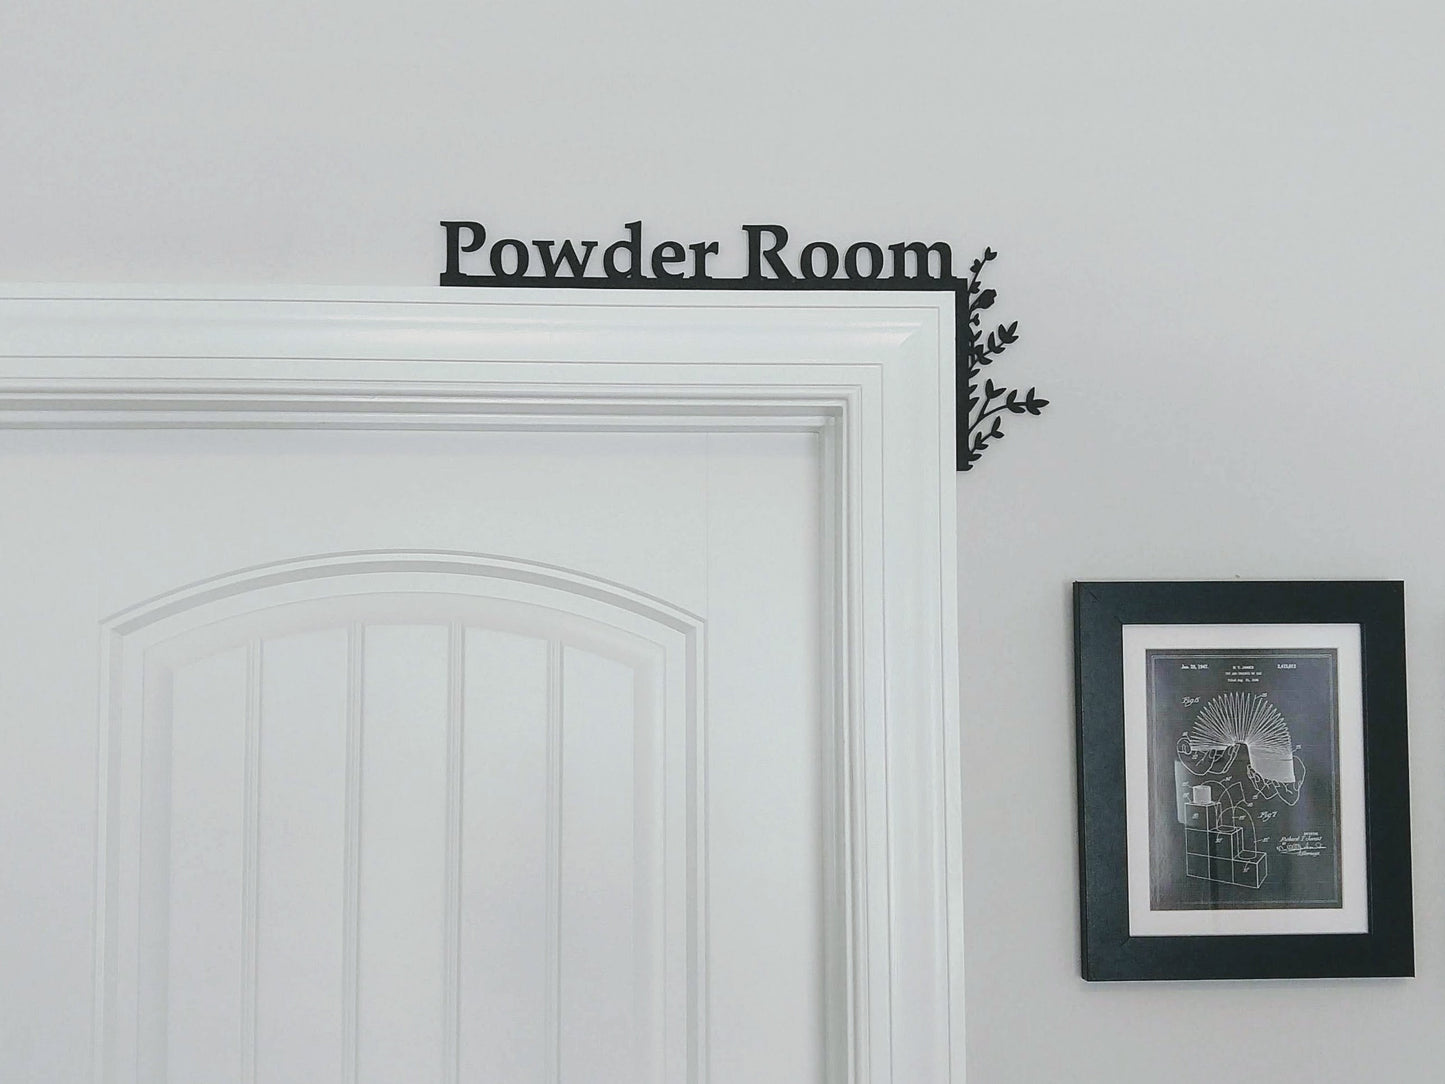 Powder Room "Over the Door" Door Topper Sign